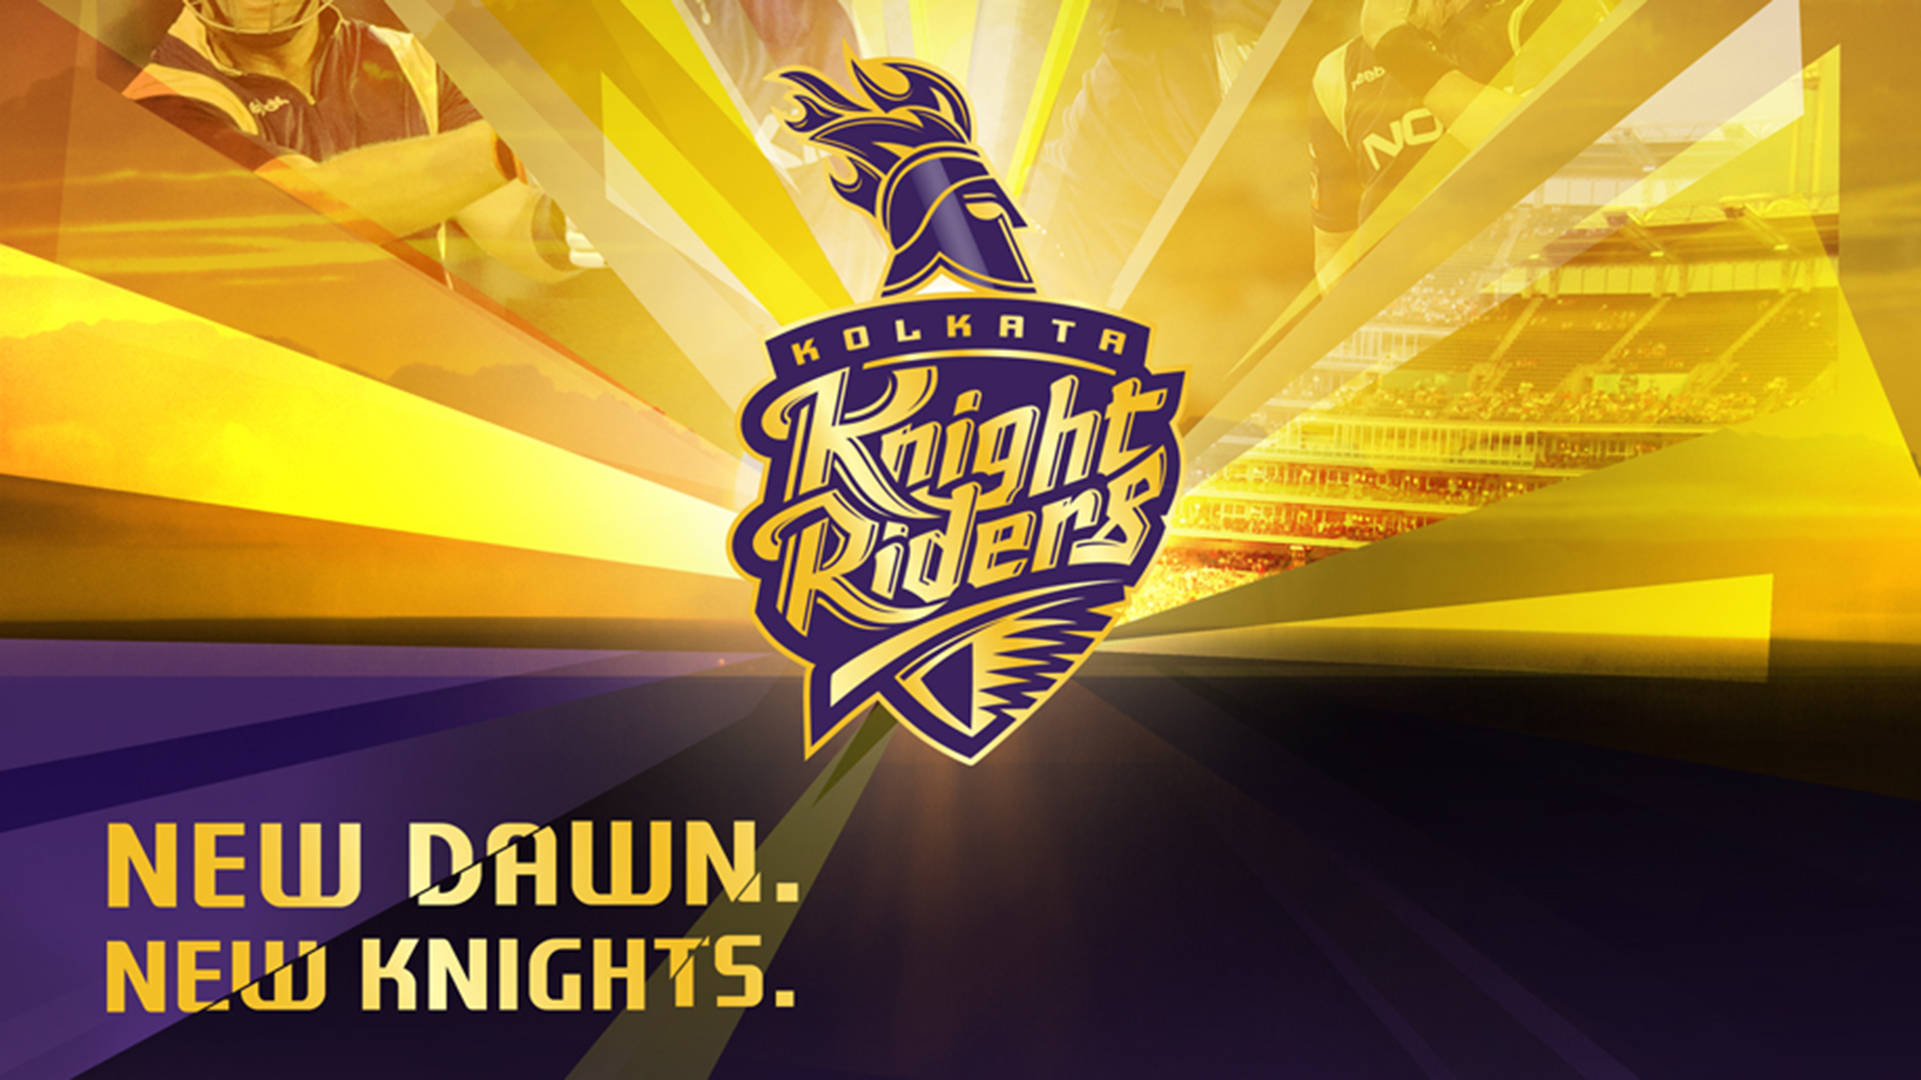 Download Kolkata Knight Riders Abstract Rays Wallpaper 